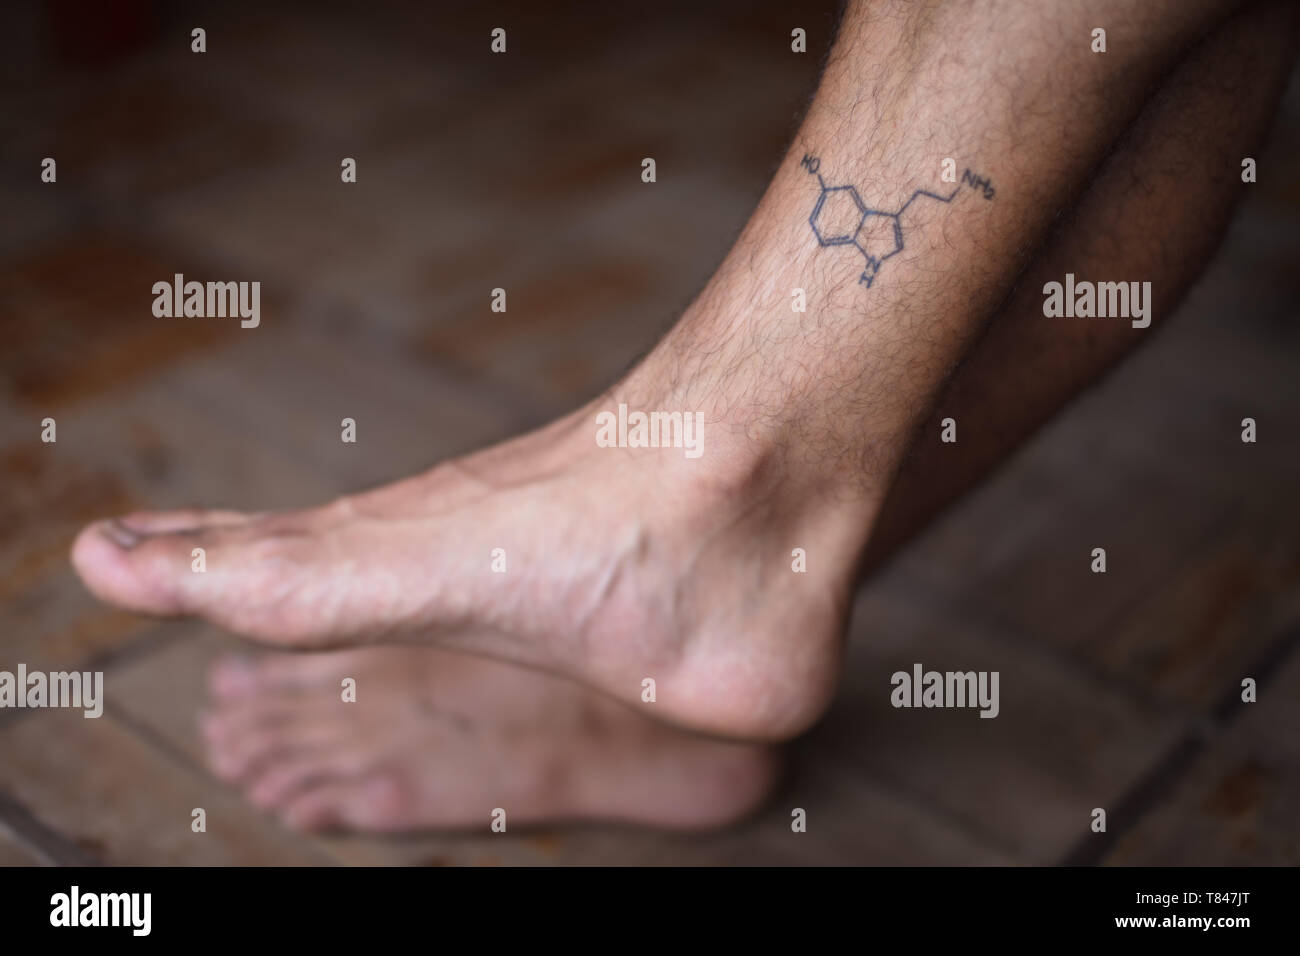 Tatuaggio di molecola serotonina su shin dell uomo Foto Stock